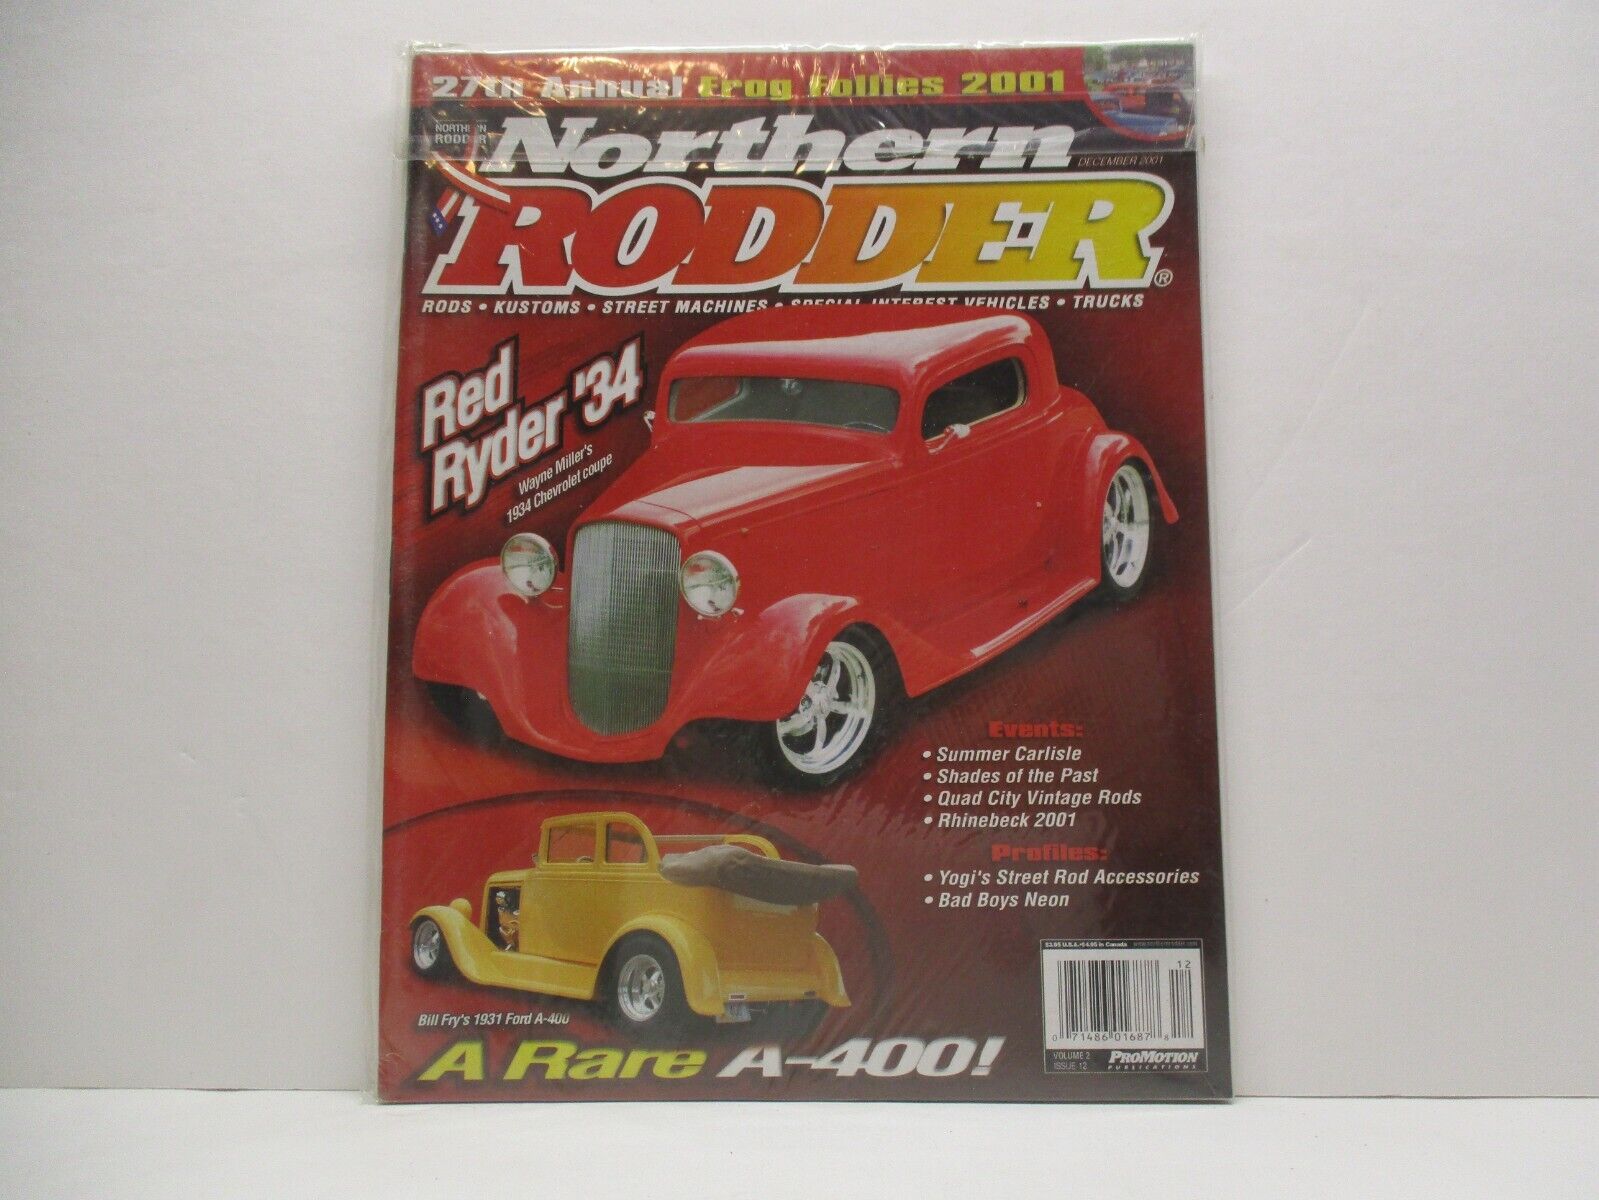 Dec. 2001  Northern Rodder Magazine Parts Tires Trucks Rat Rod Ford Chevy Dodge